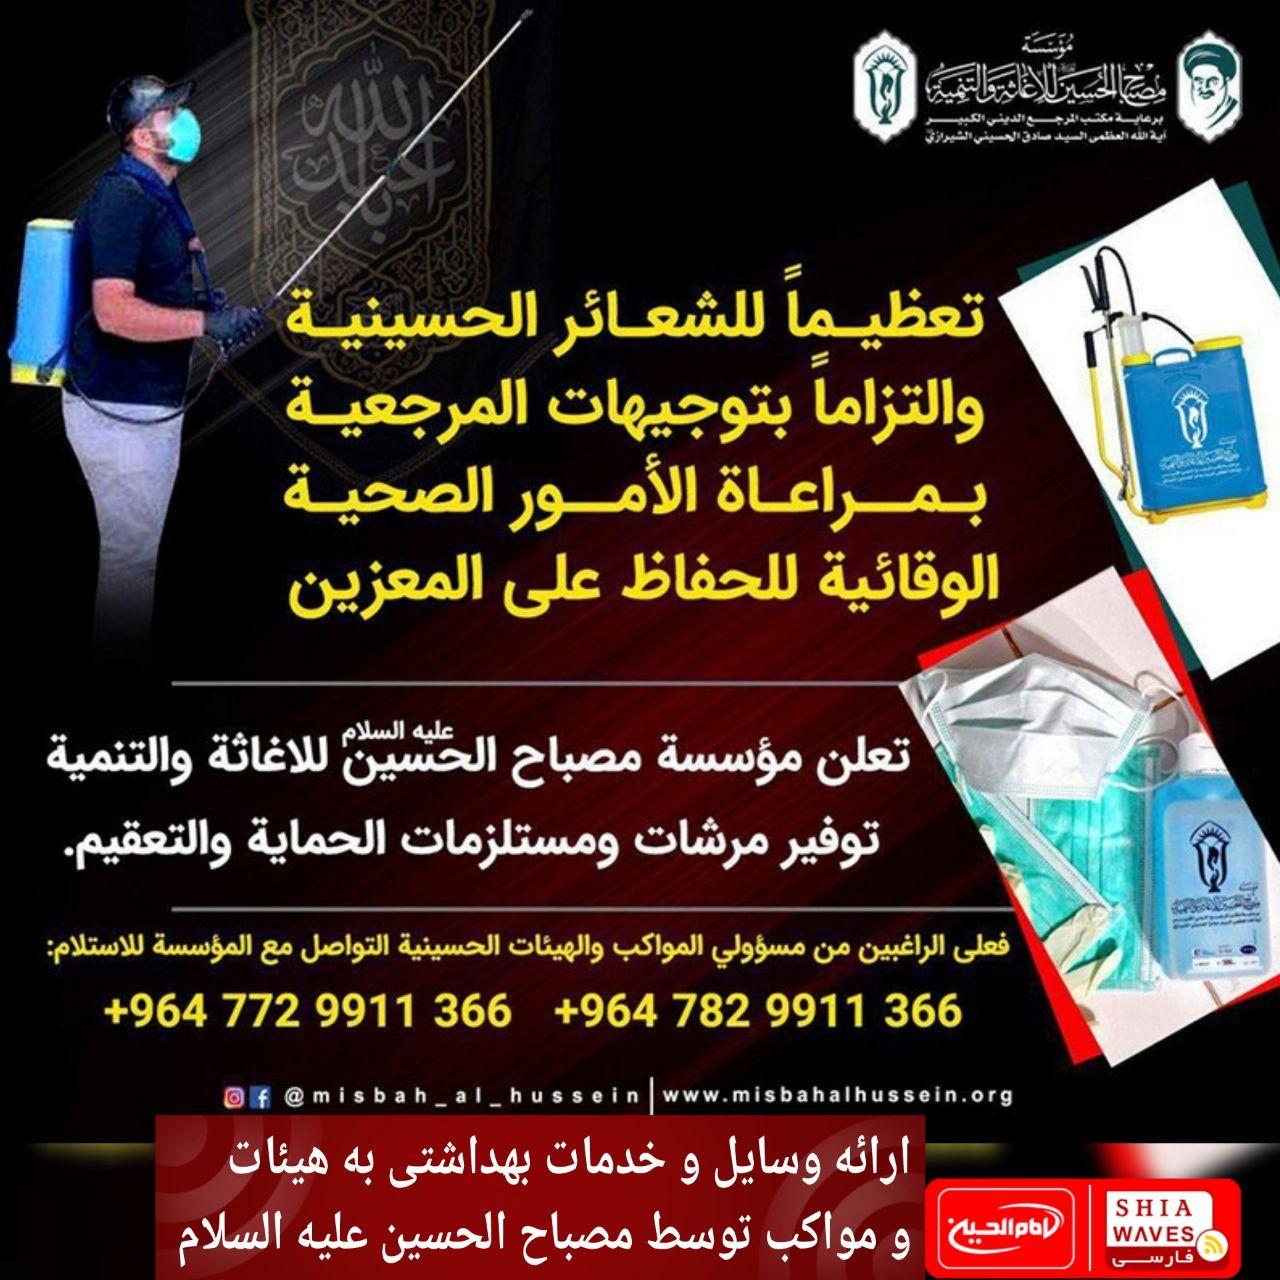 تصویر ارائه وسایل و خدمات بهداشتی به هیئات و مواکب توسط مصباح الحسین علیه السلام